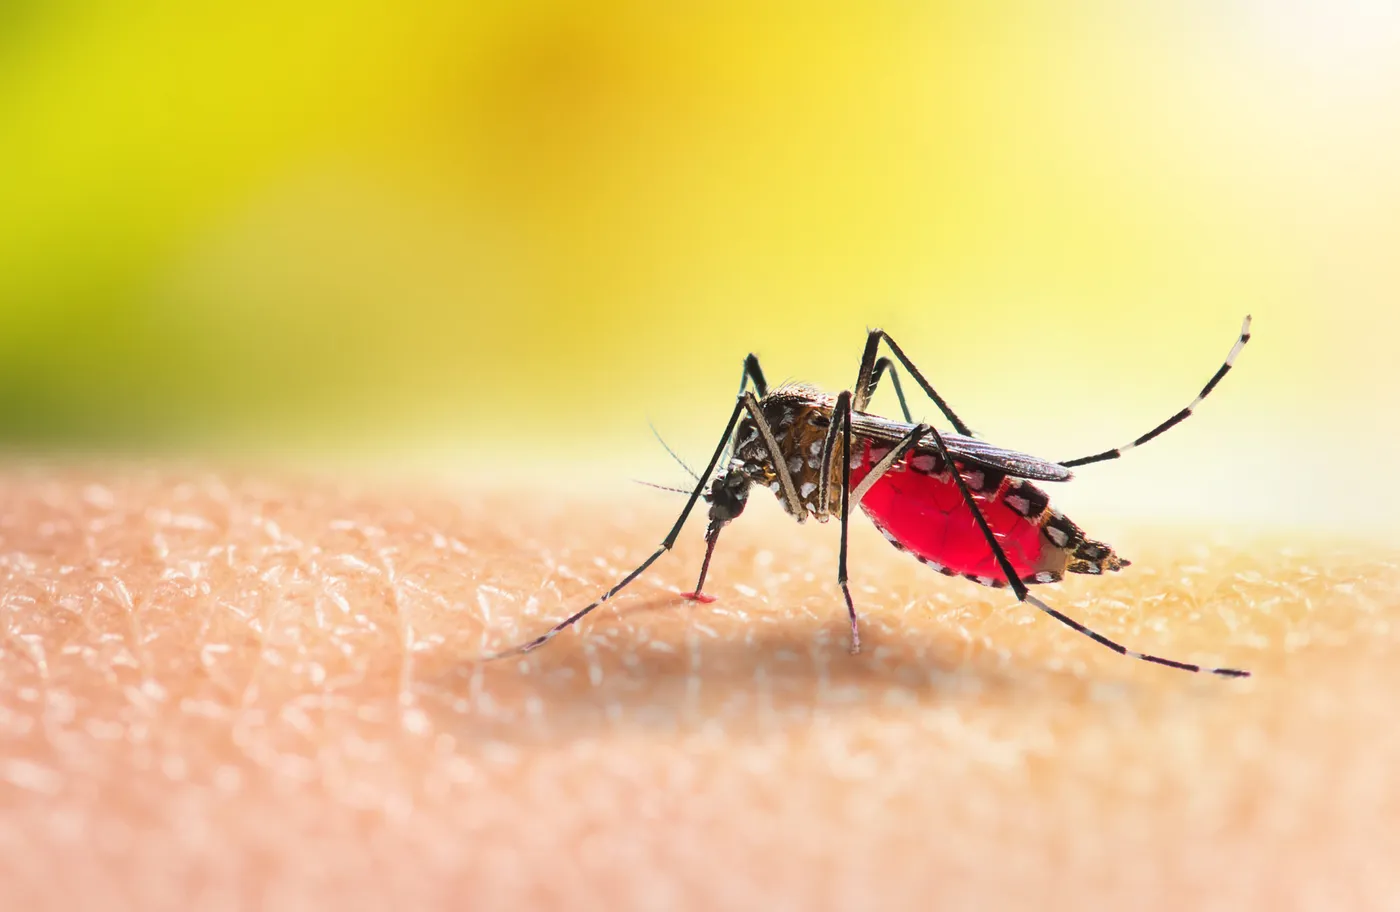 Se reportaron 36 nuevos casos autóctonos de dengue y 1 autóctono de chikungunya en la provincia